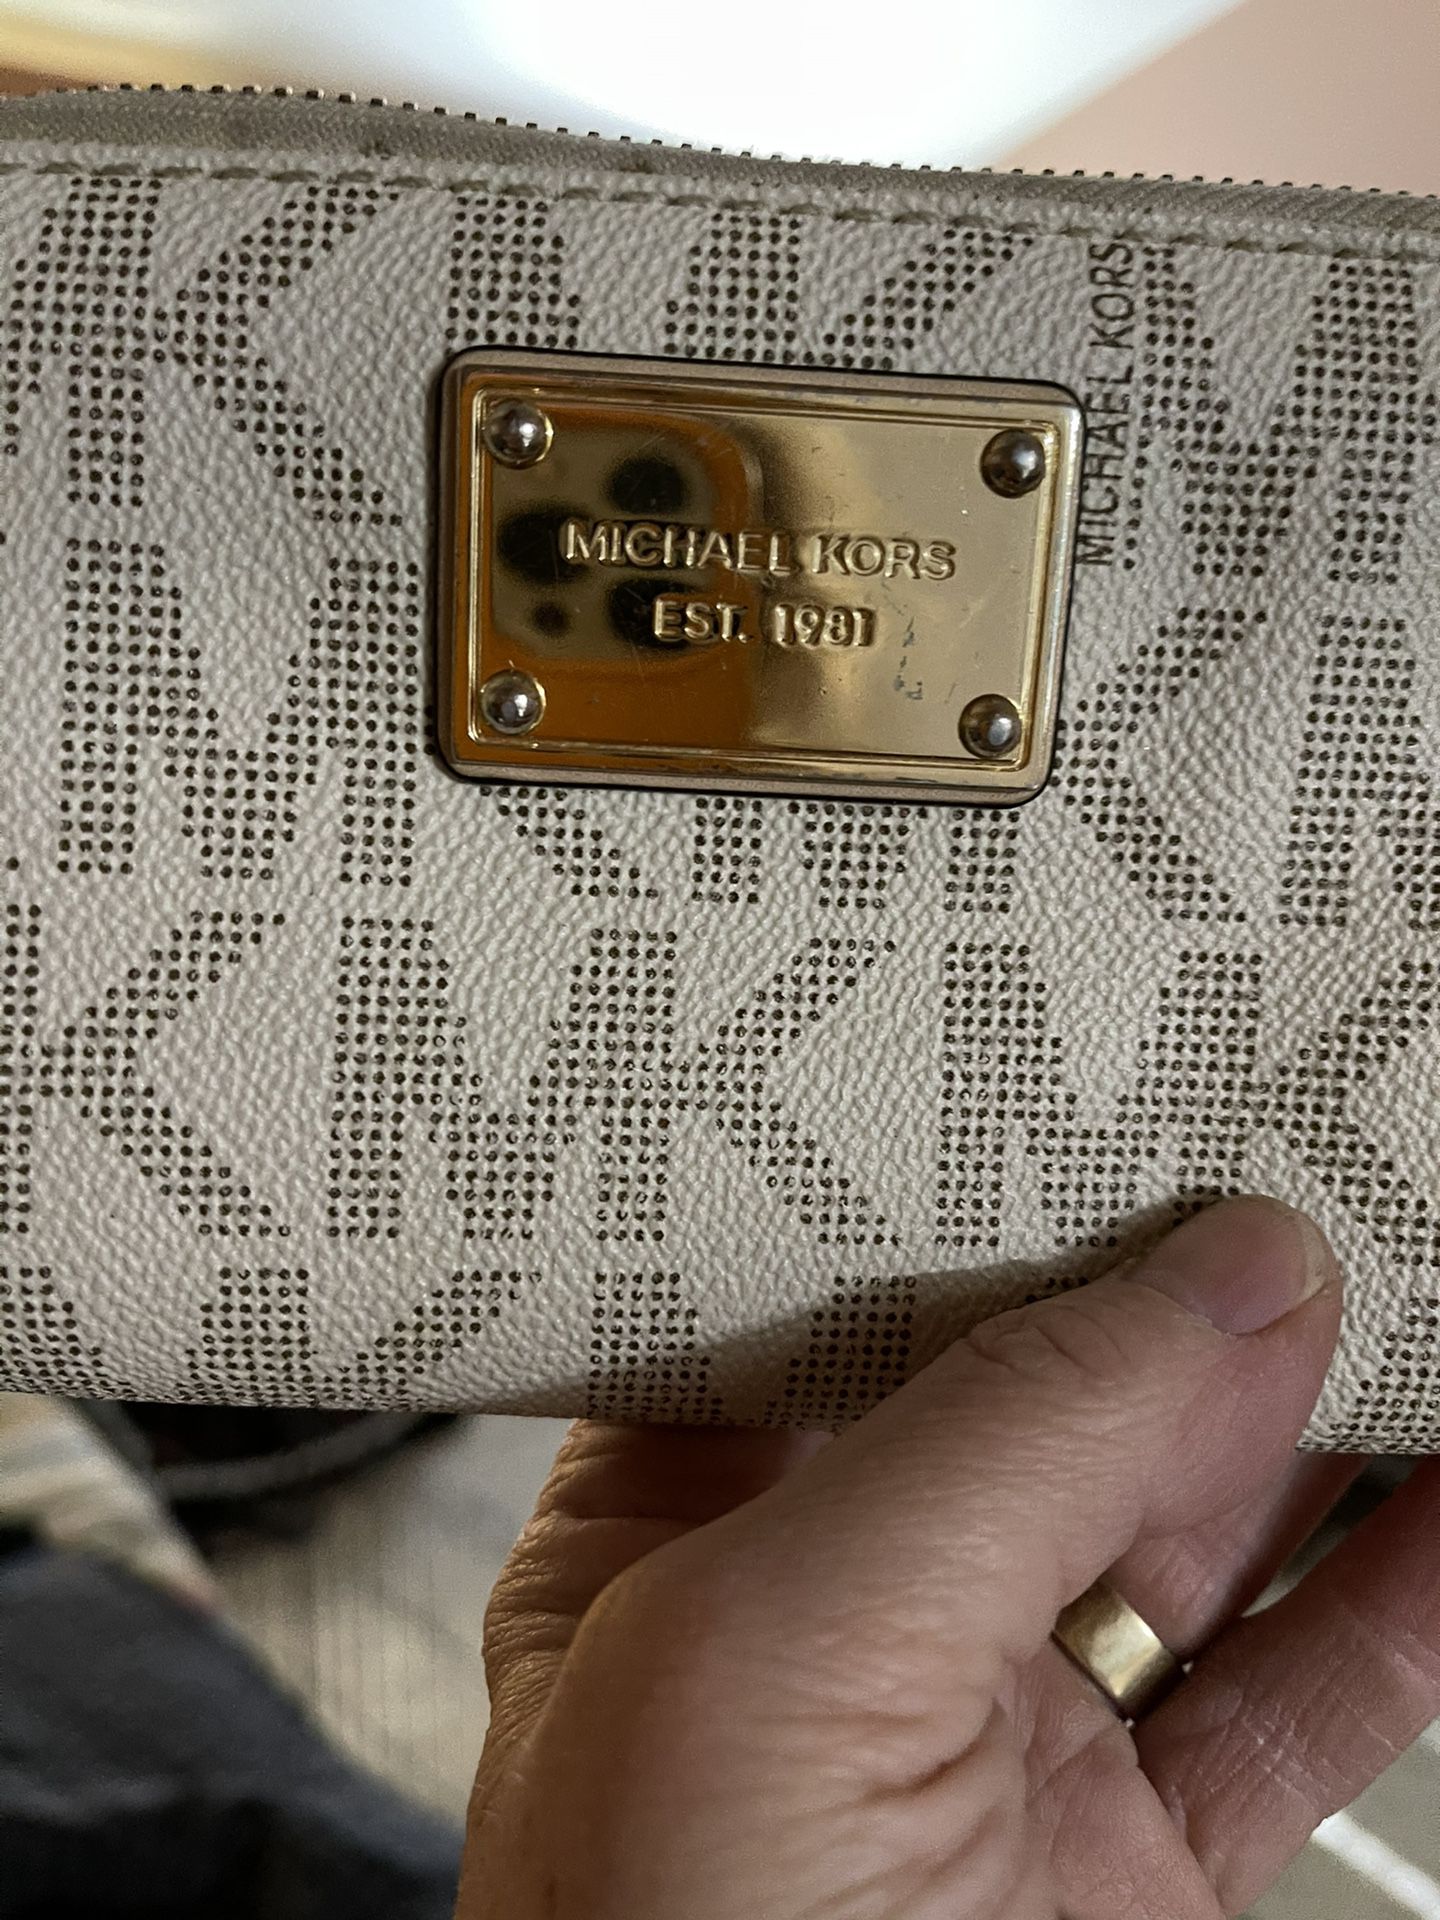 Michael Kors Handbag And Wristlet.